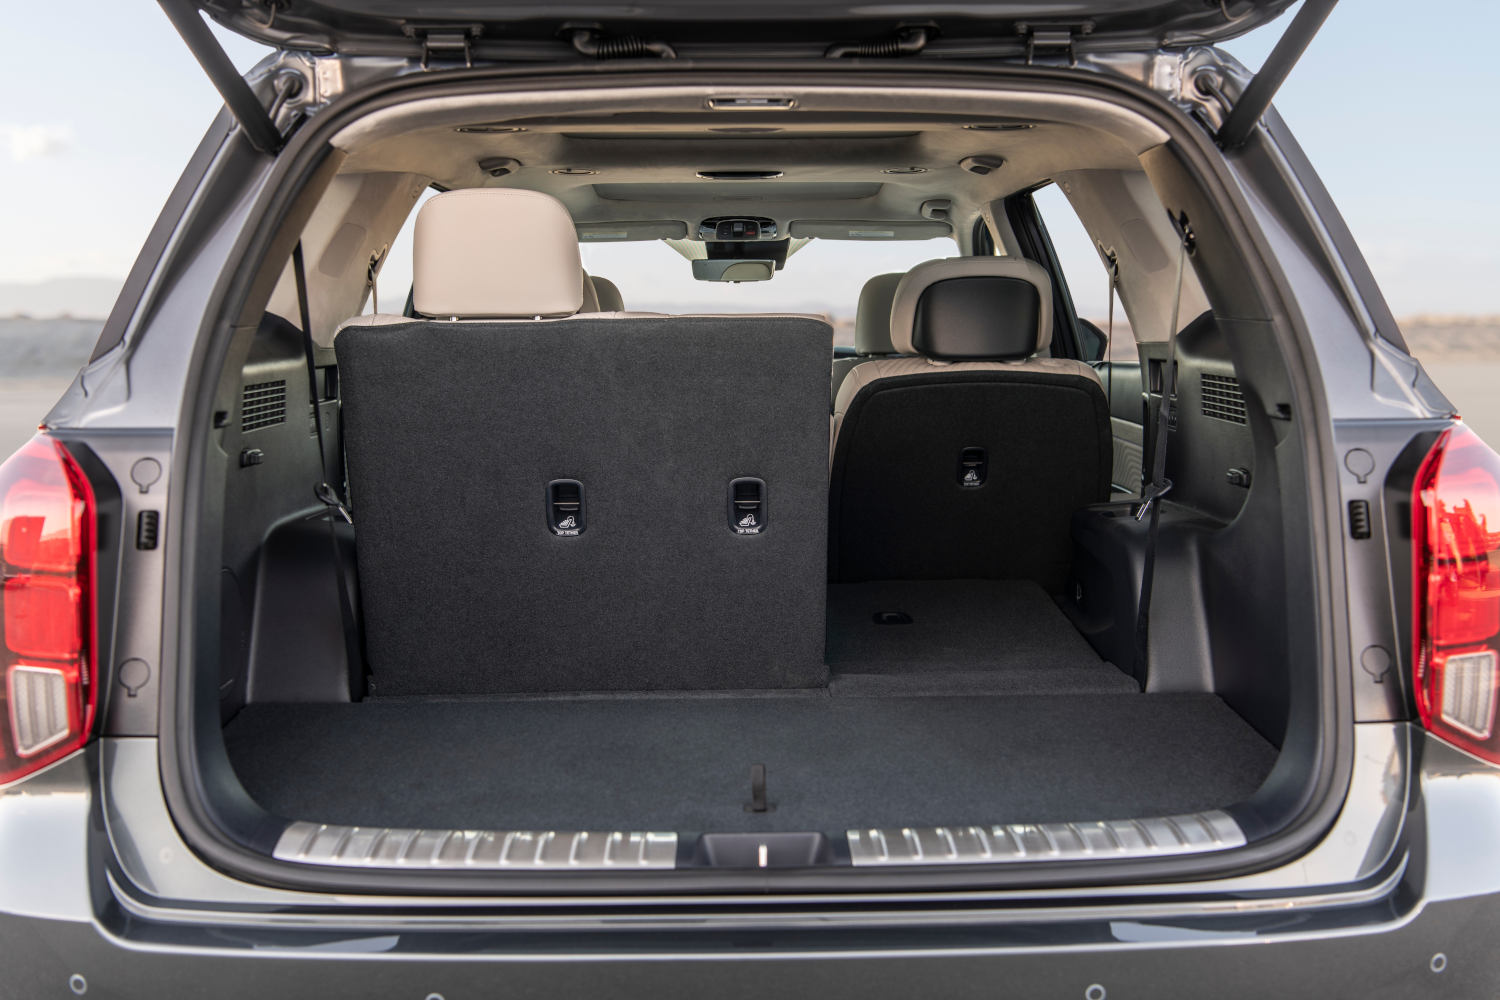 Inside the Hyundai Palisade SUV